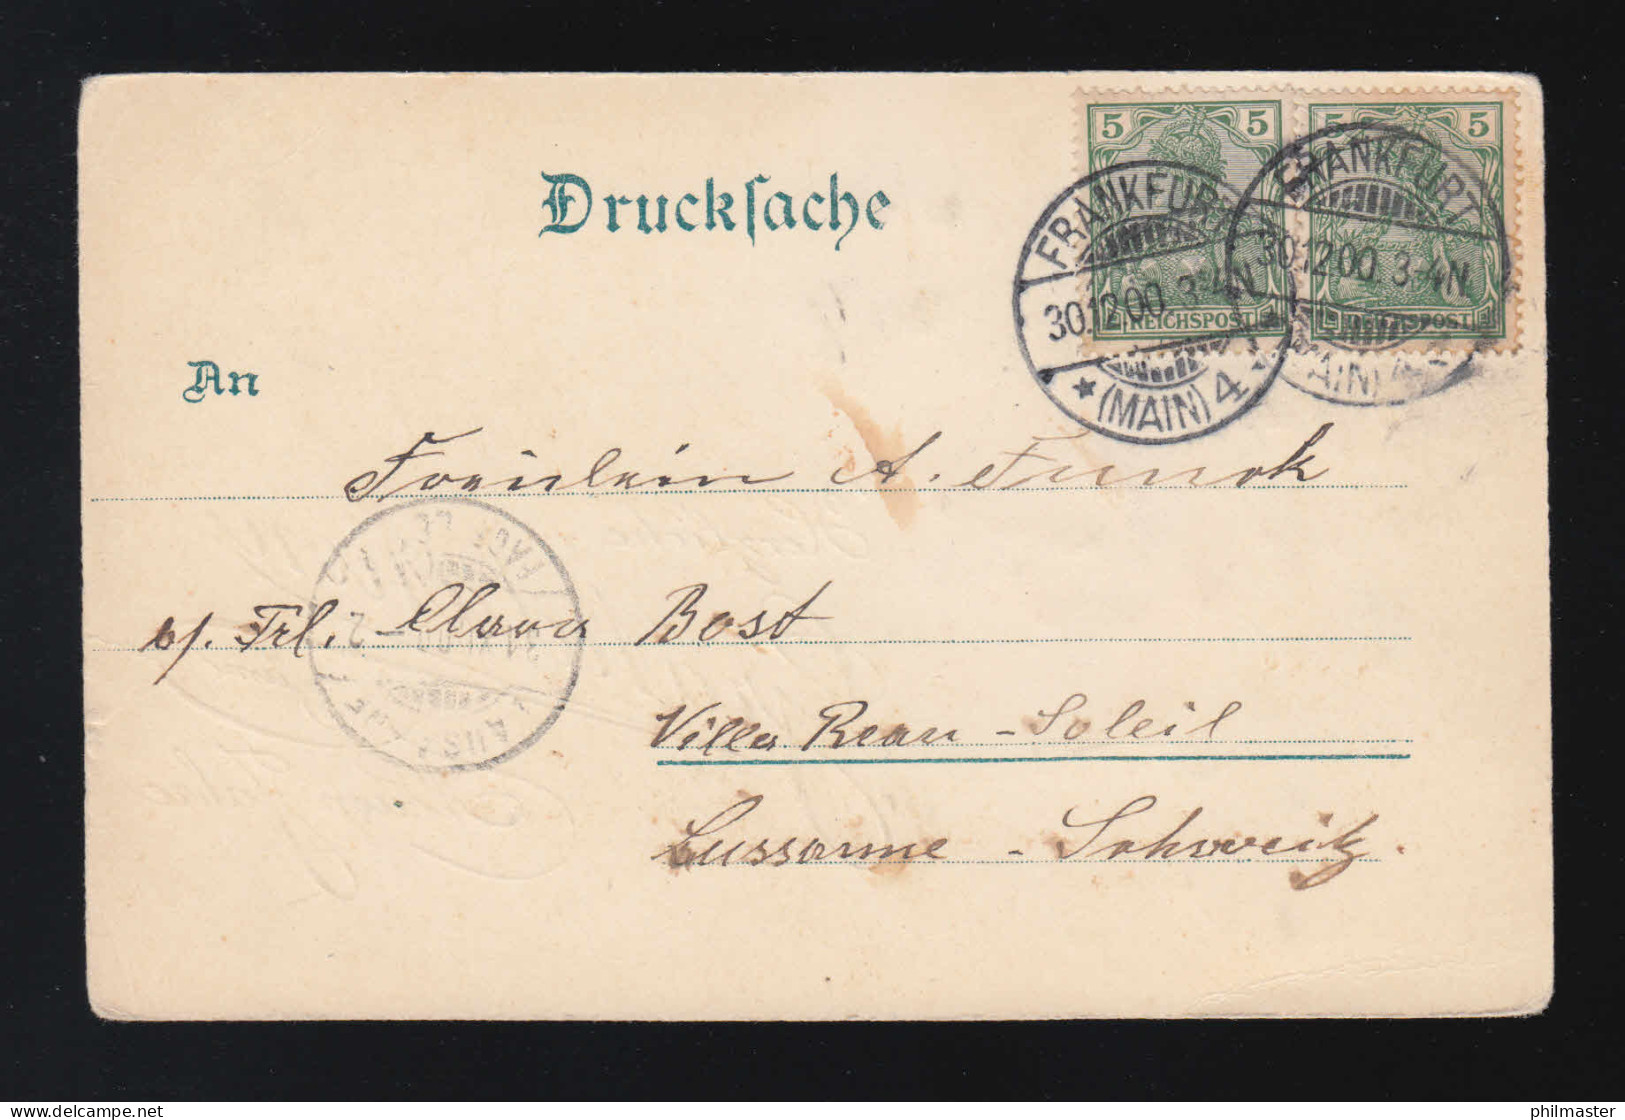 Herzliche Gratulation Zum Neuen Jahre Rosen,  Frankfurt/Lausanne 30.12.1900 - Contre La Lumière